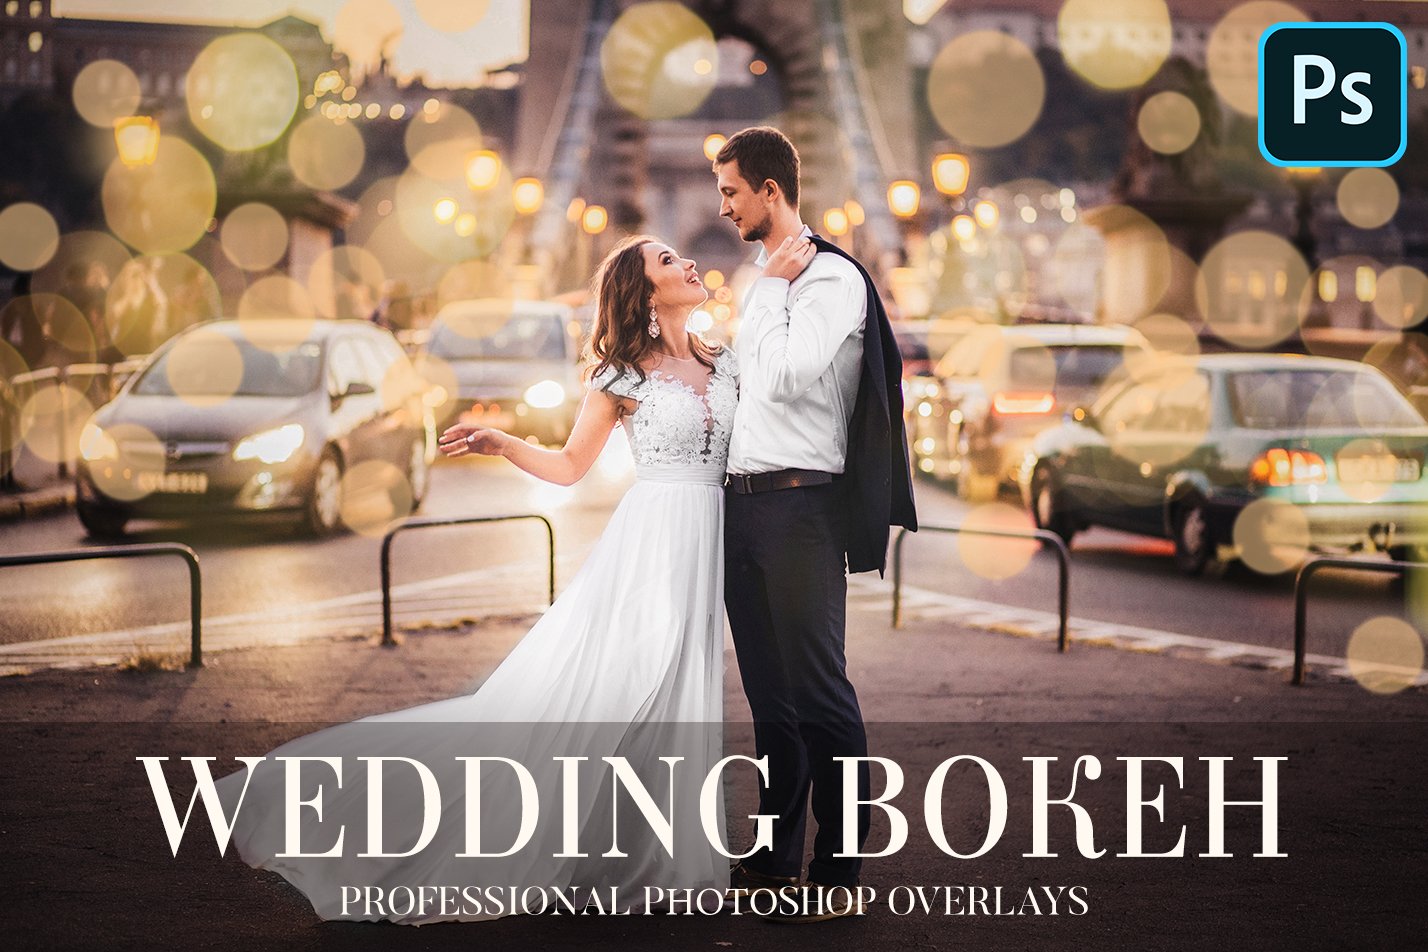 Wedding Bokeh Overlayscover image.